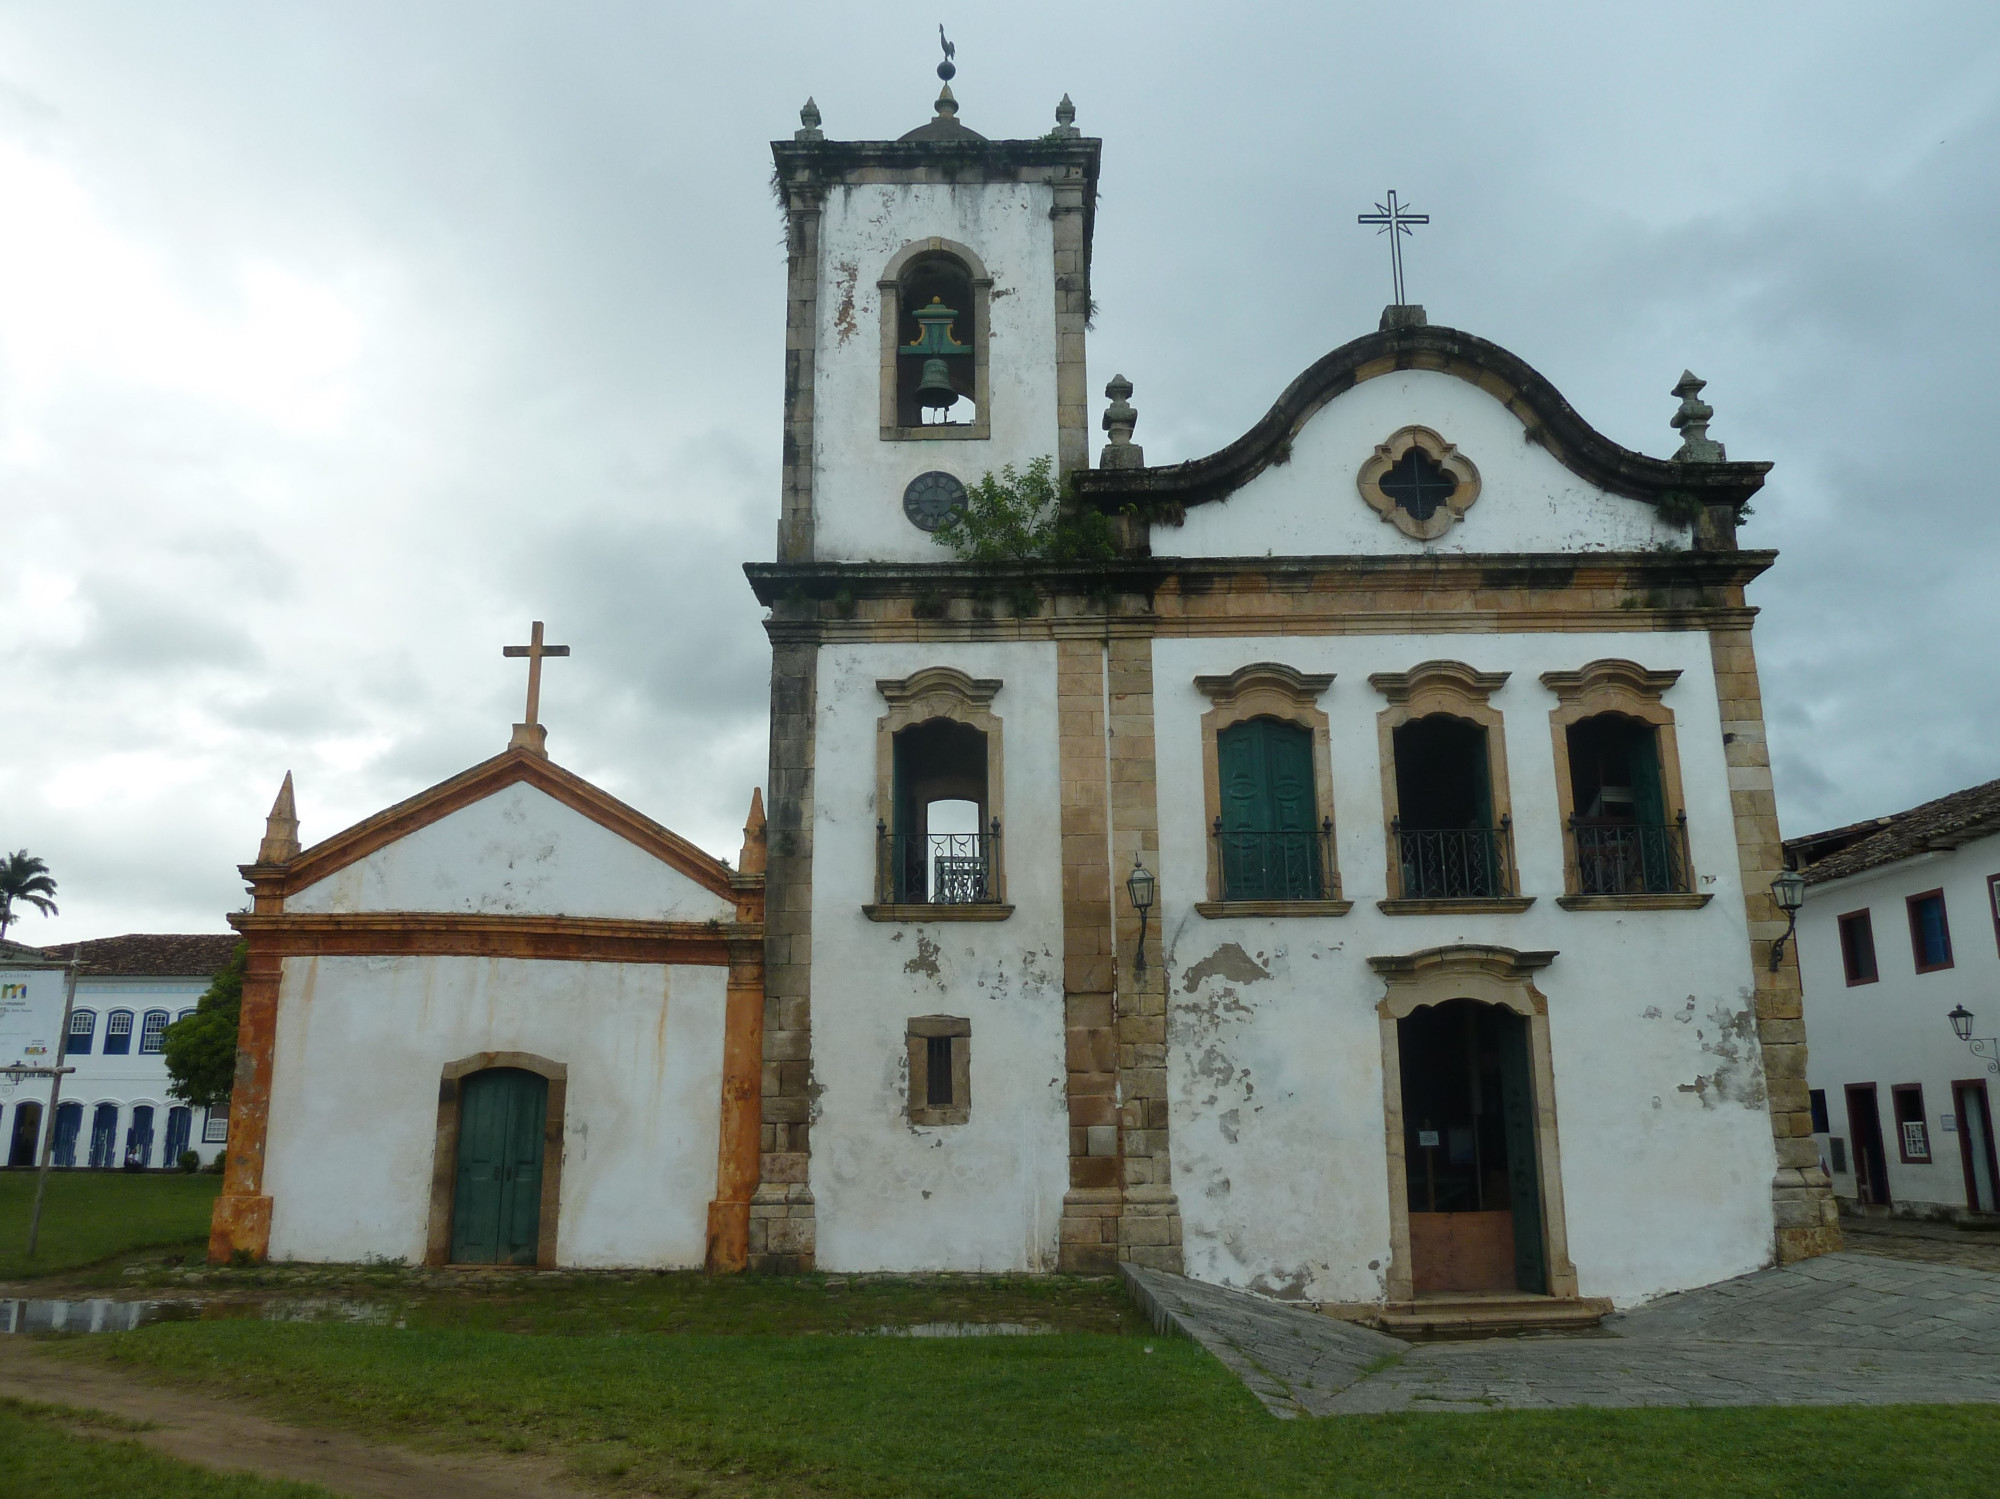 Capela Santa Rita de Cássia<br/>
Catholic church